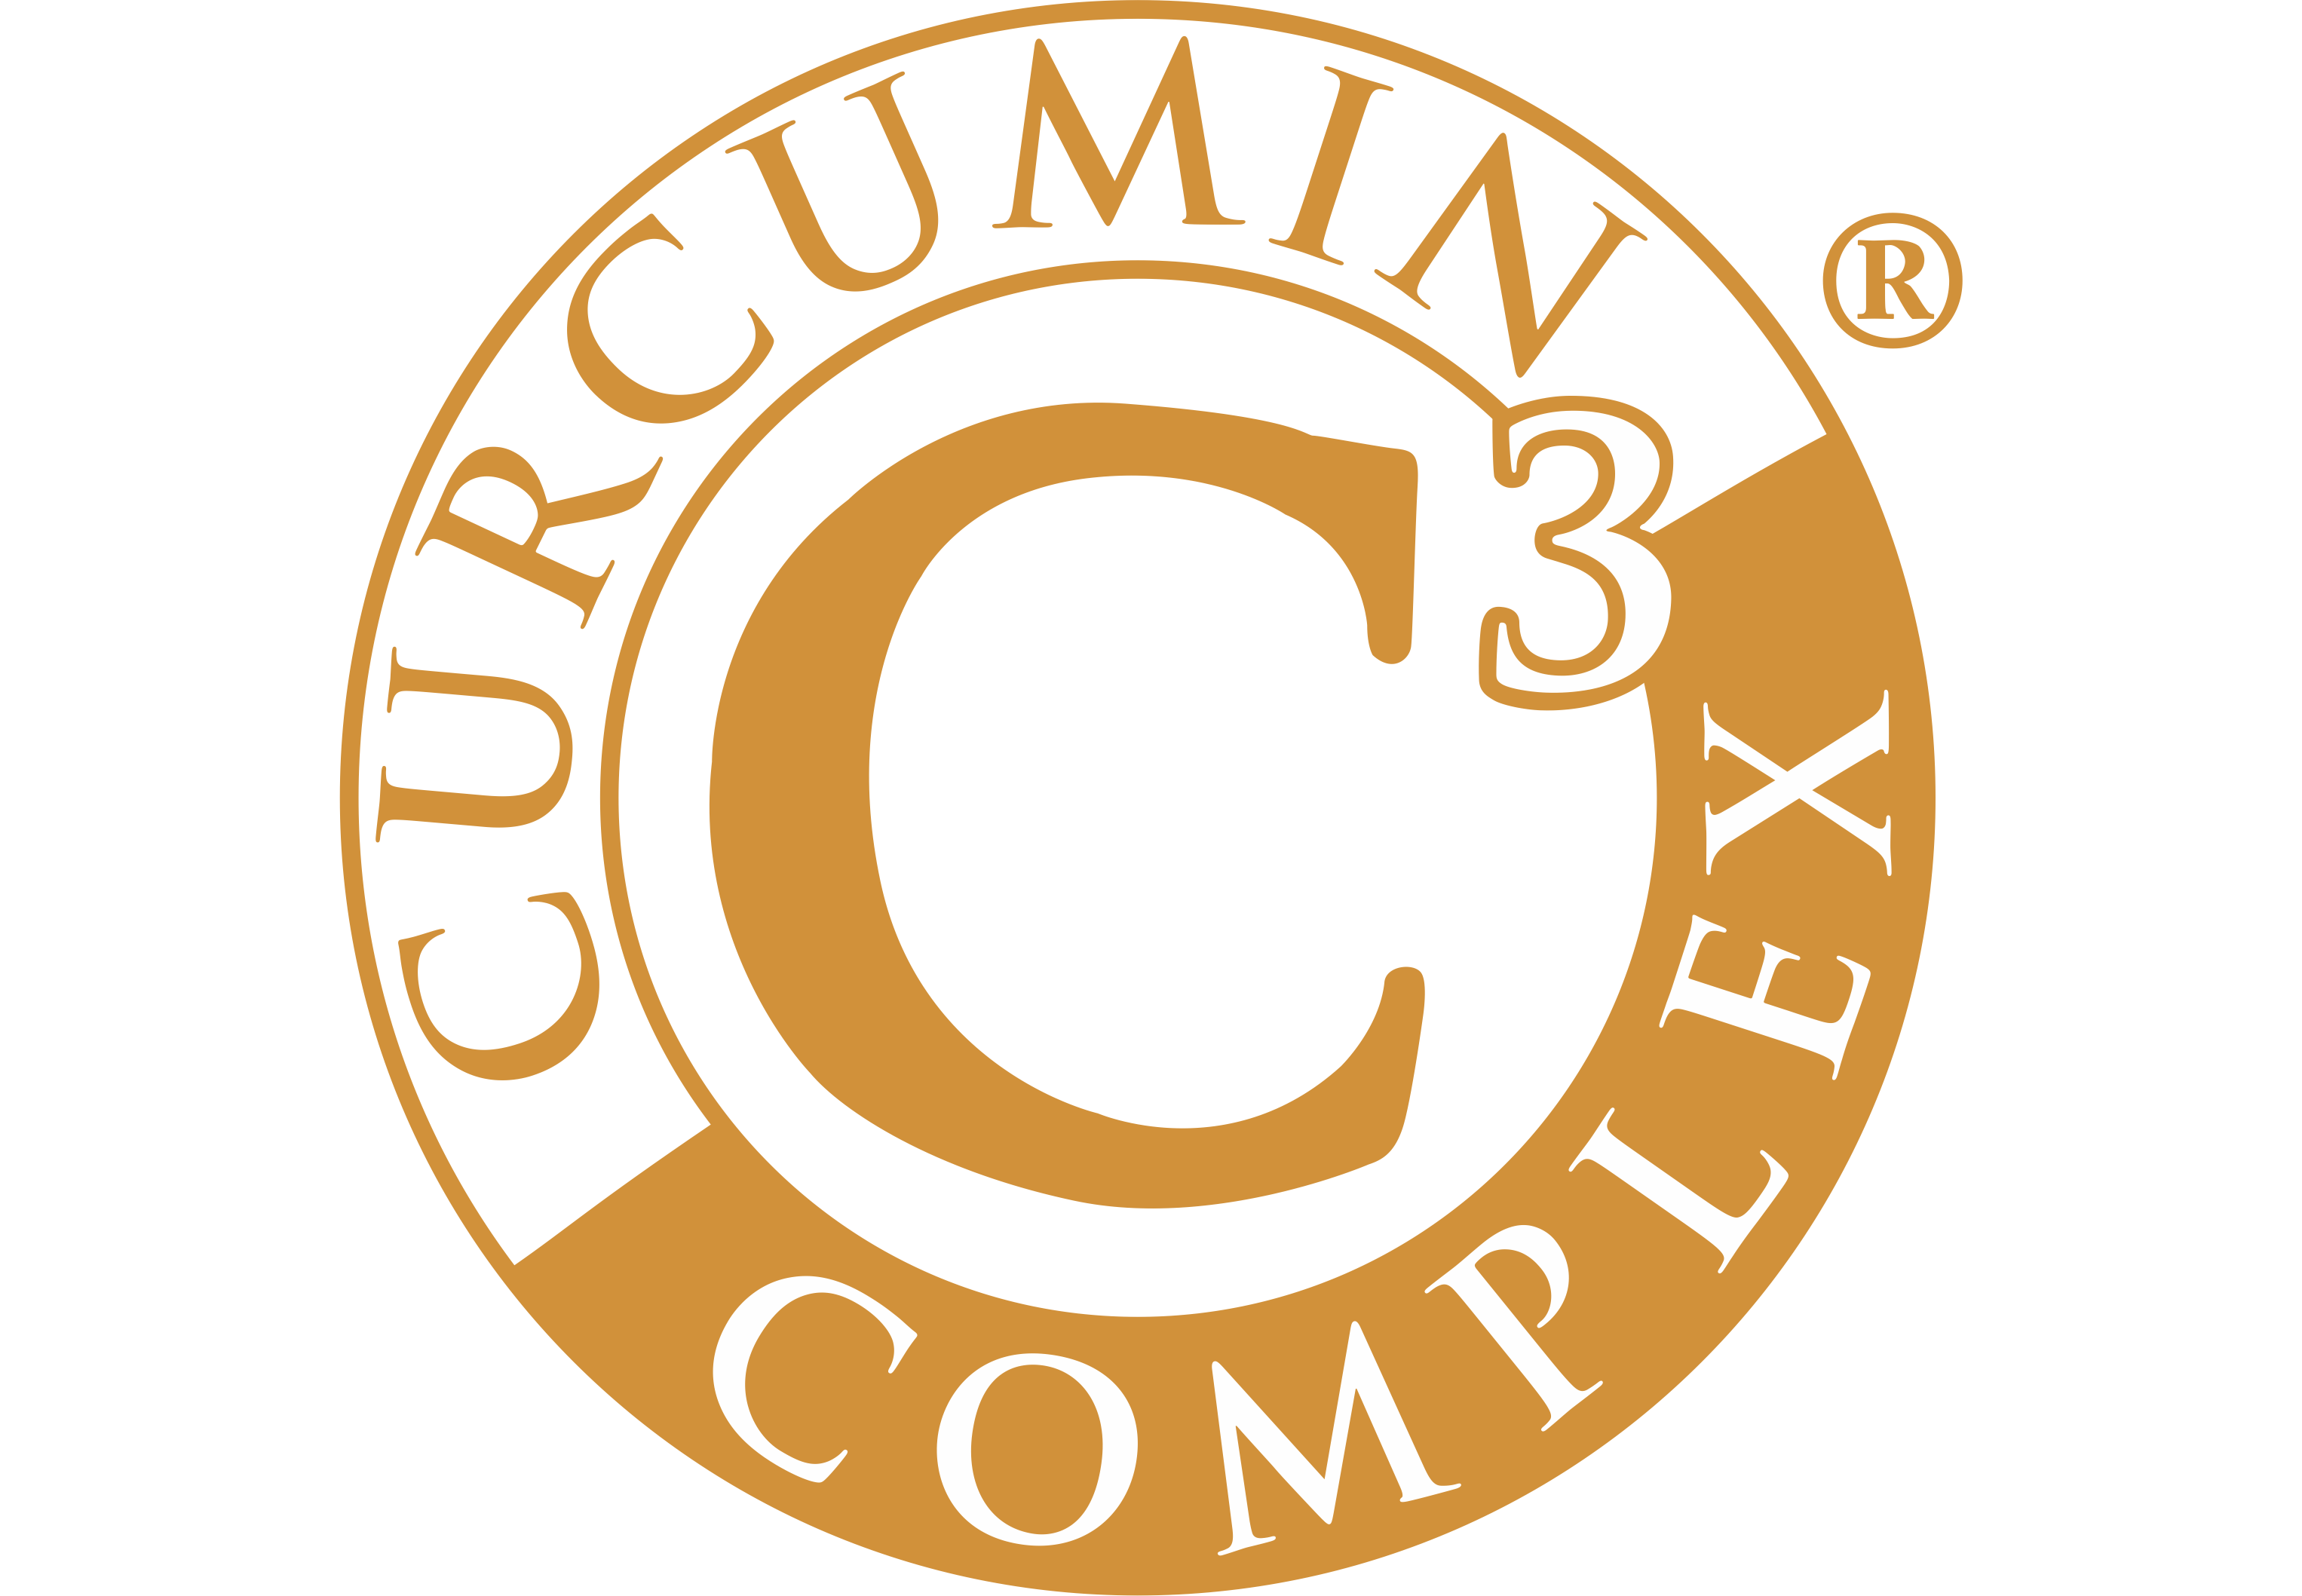 Curcumin 500 (120 Kps)